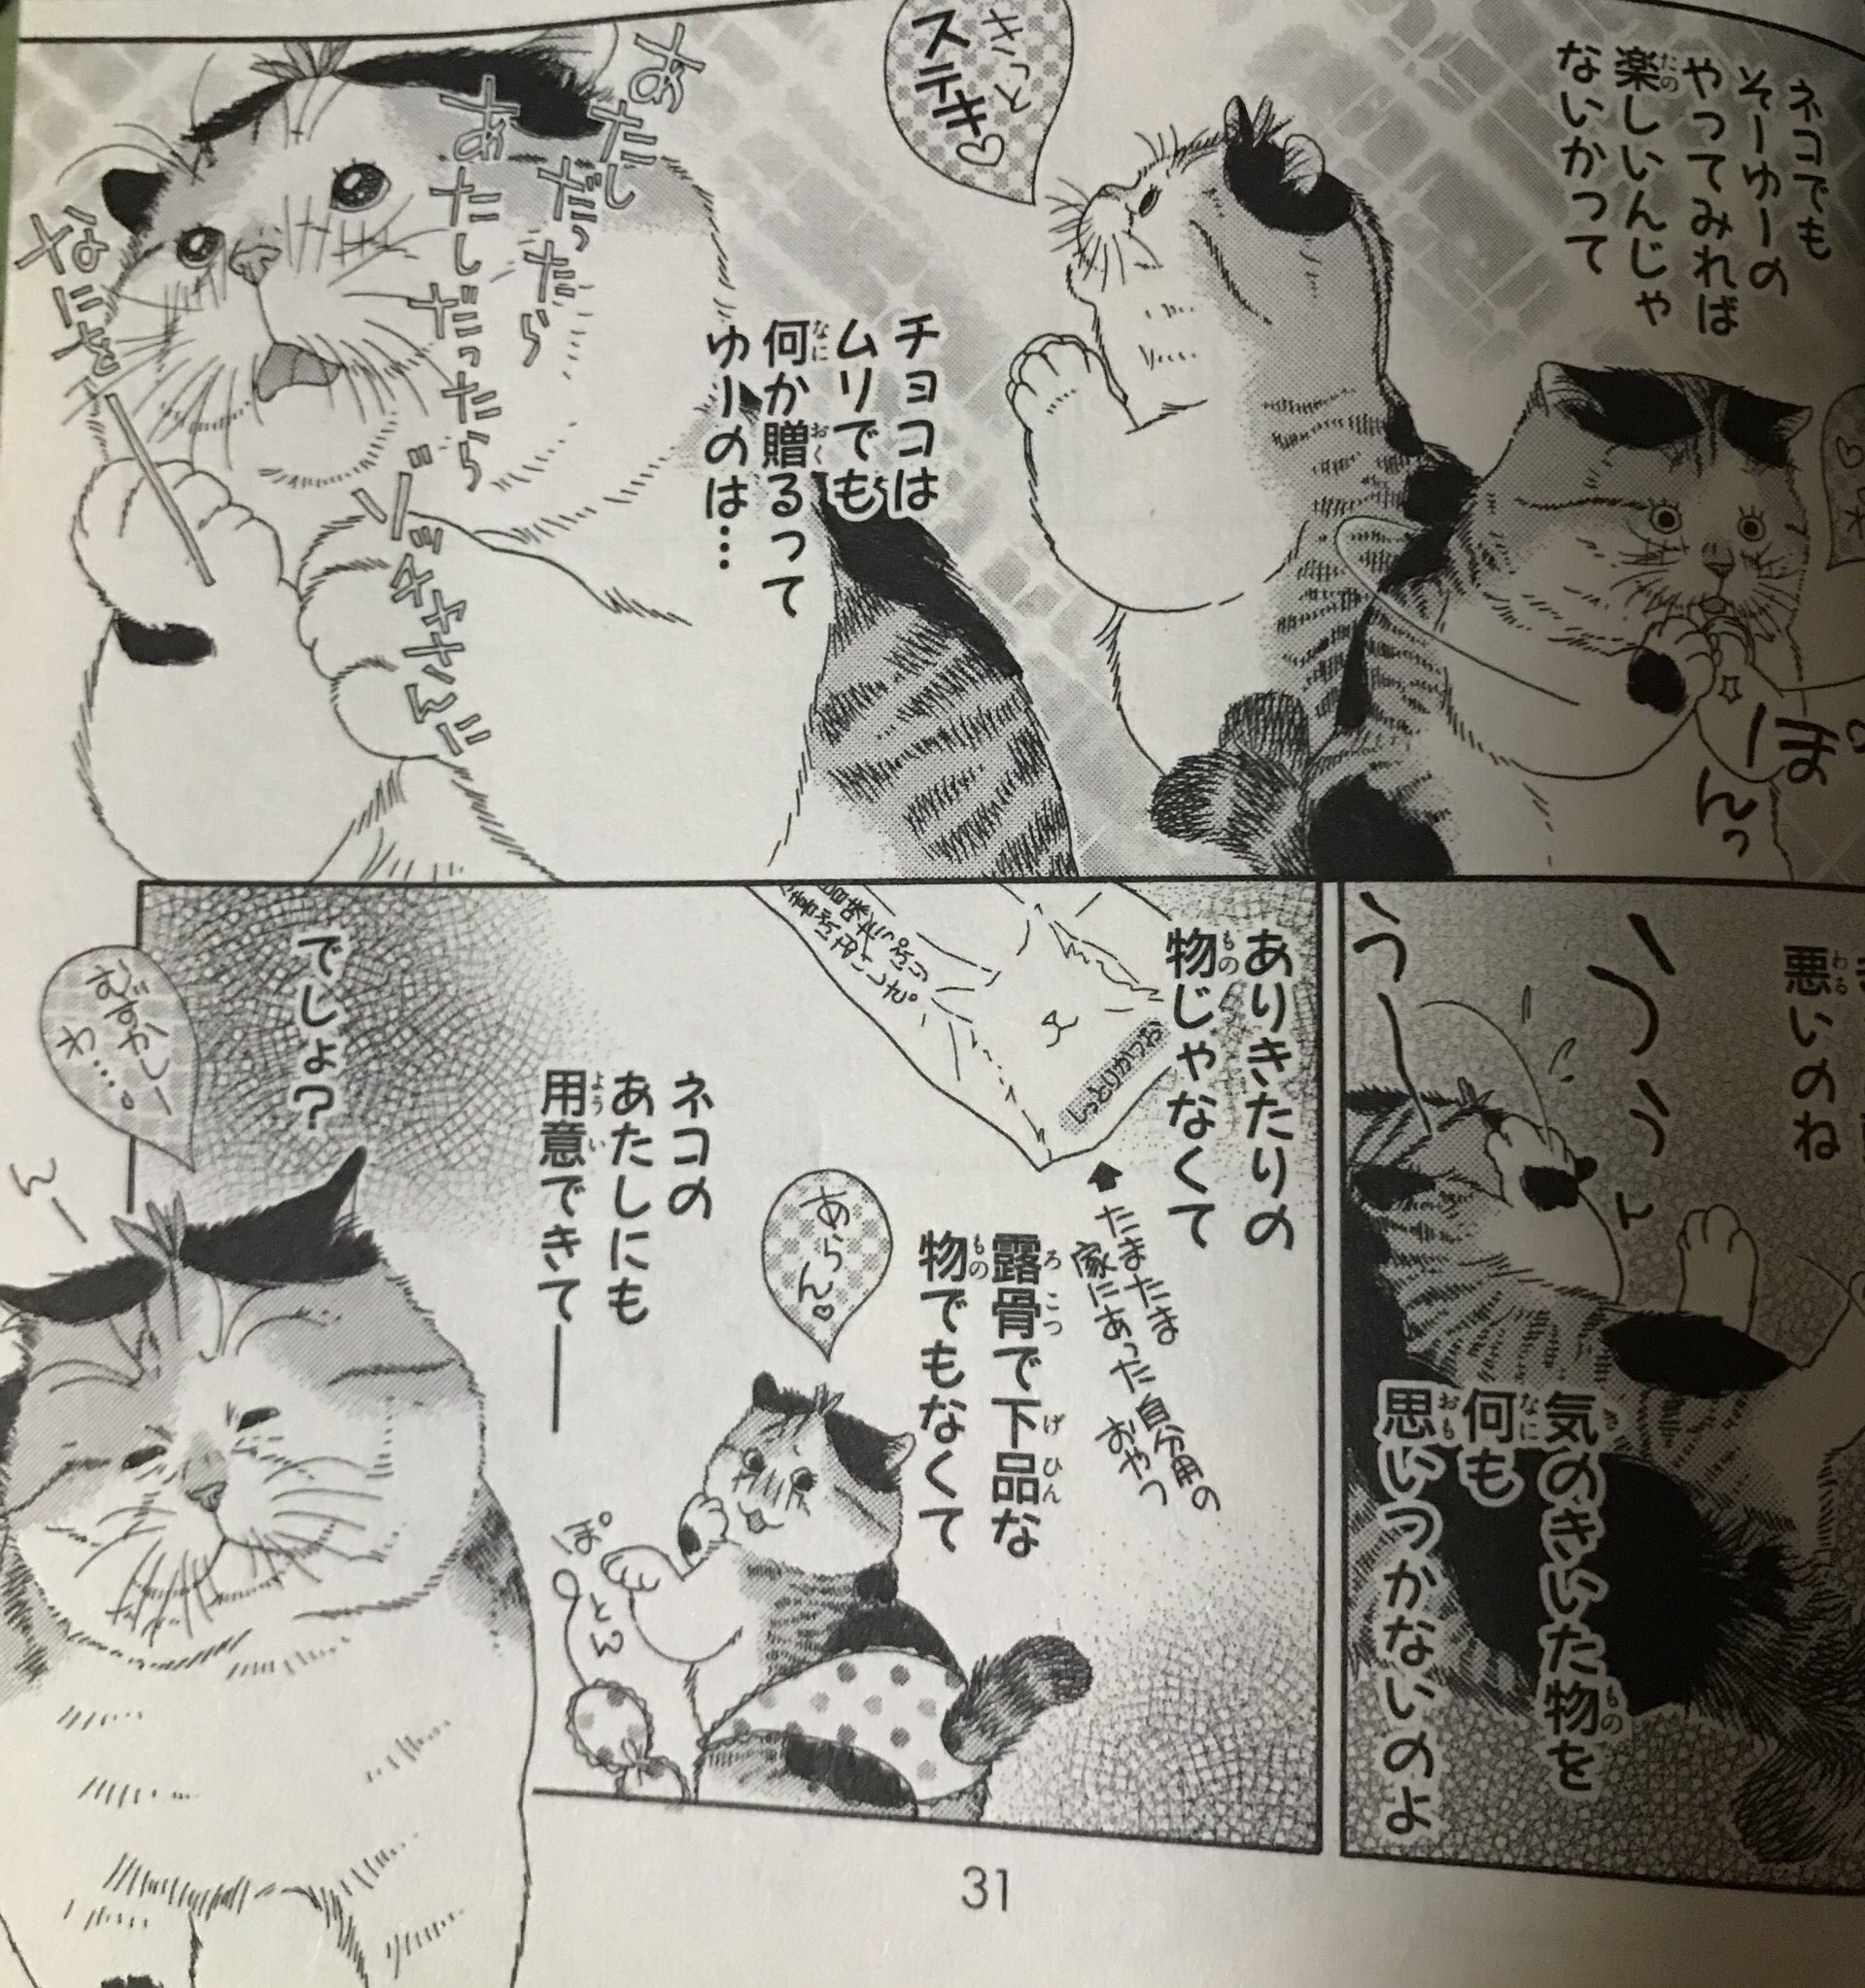 生藤由美 猫漫画 ボードレールの猫 フォロワーさんがあげてくださった ゾッチャの日常 です 左側は扉絵で 実はかなりお気に入りの絵なのです デジタル配信中なので よろしくお願い致します Twitter